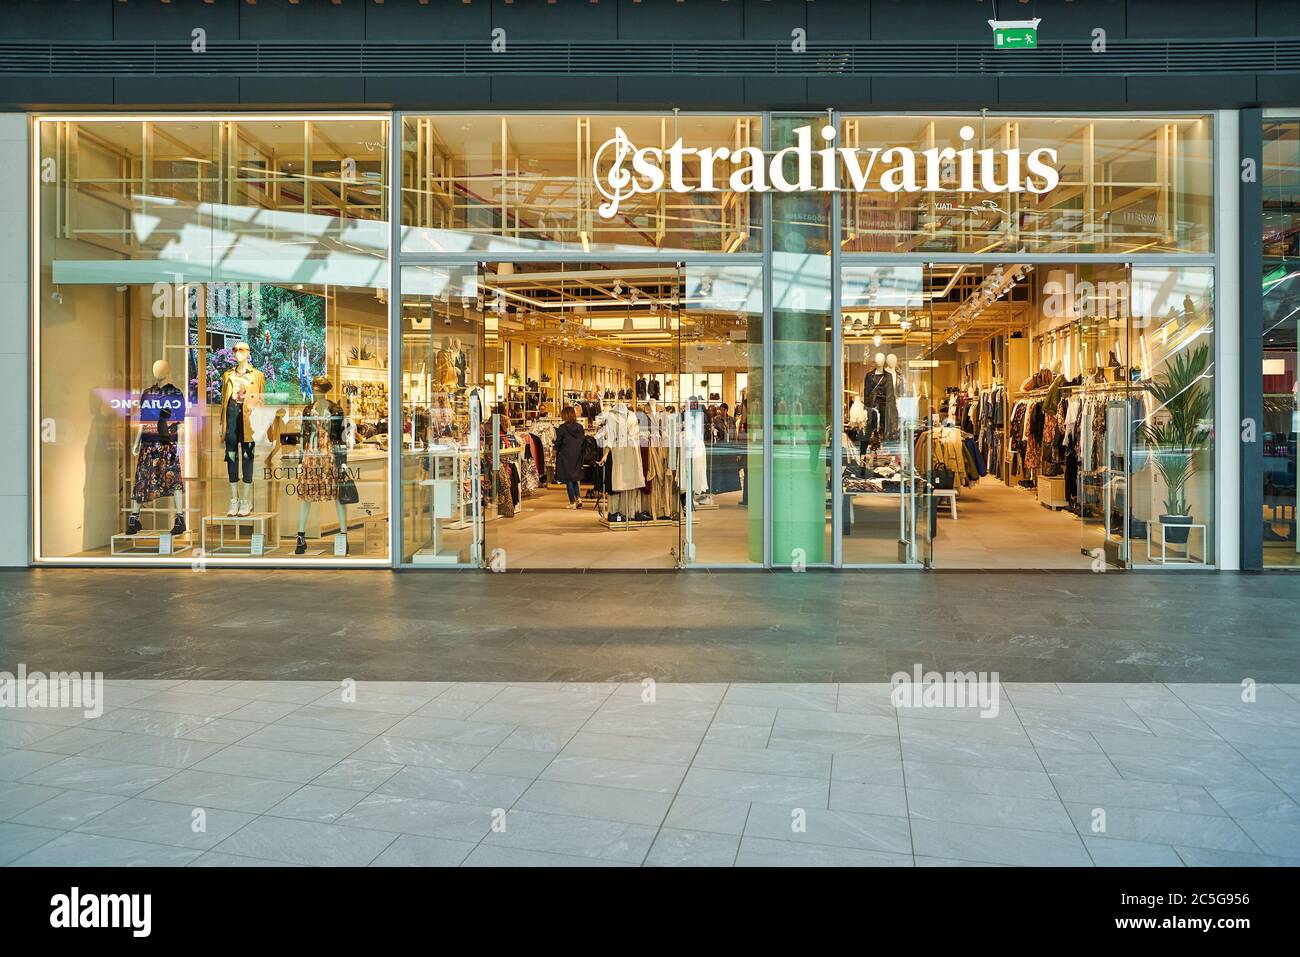 MOSCÚ, RUSIA - 14 SEPTIEMBRE de 2019: Entrada a la tienda Stradivarius el comercial Salaris en Moscú. Stradivarius es una mujer internacional vestido Fotografía de - Alamy